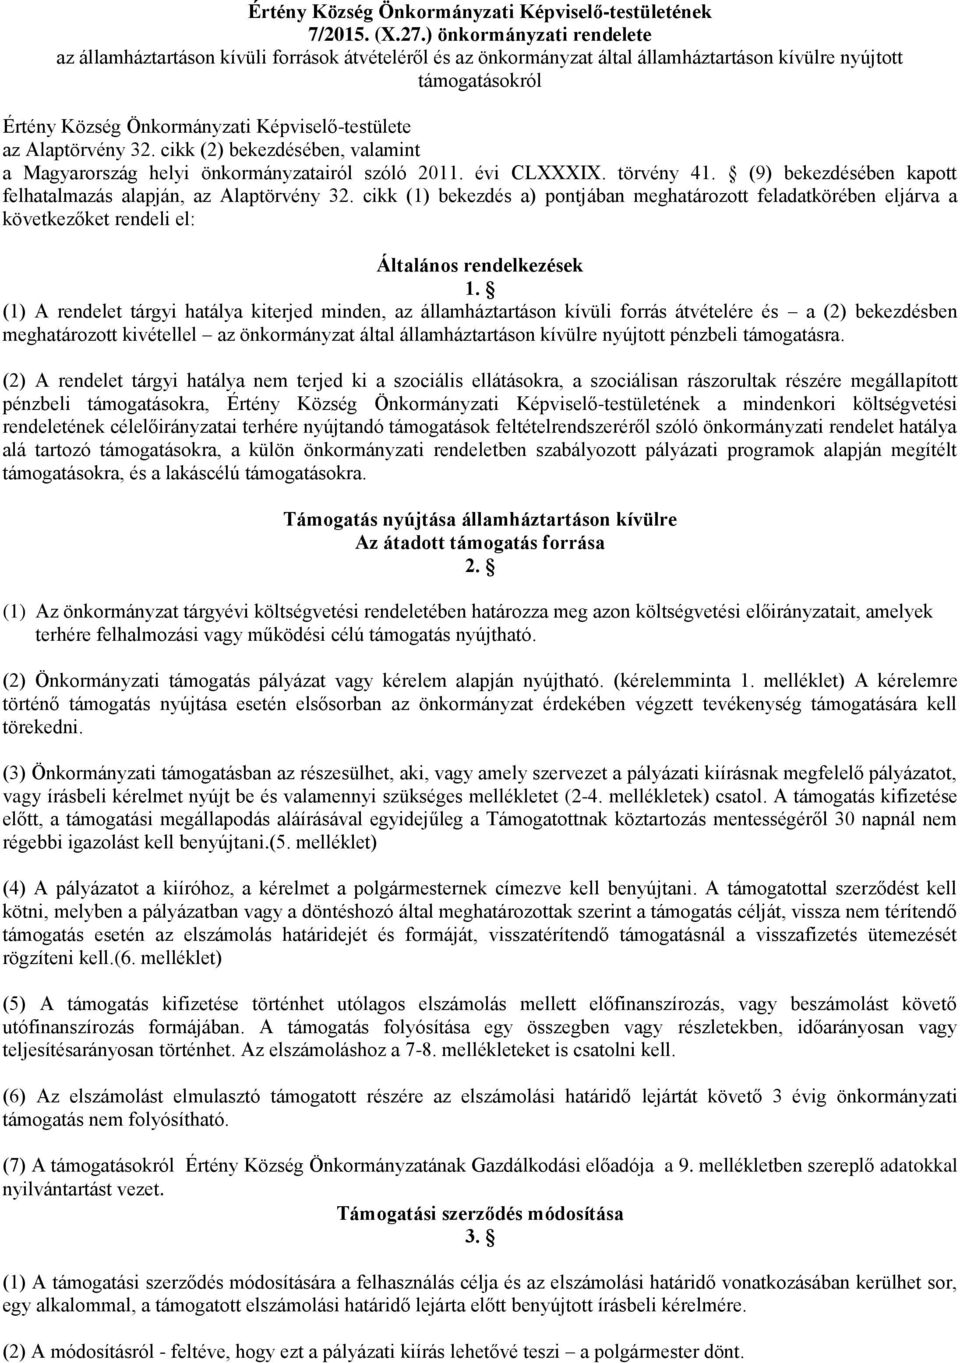 Alaptörvény 32. cikk (2) bekezdésében, valamint a Magyarország helyi önkormányzatairól szóló 2011. évi CLXXXIX. törvény 41. (9) bekezdésében kapott felhatalmazás alapján, az Alaptörvény 32.